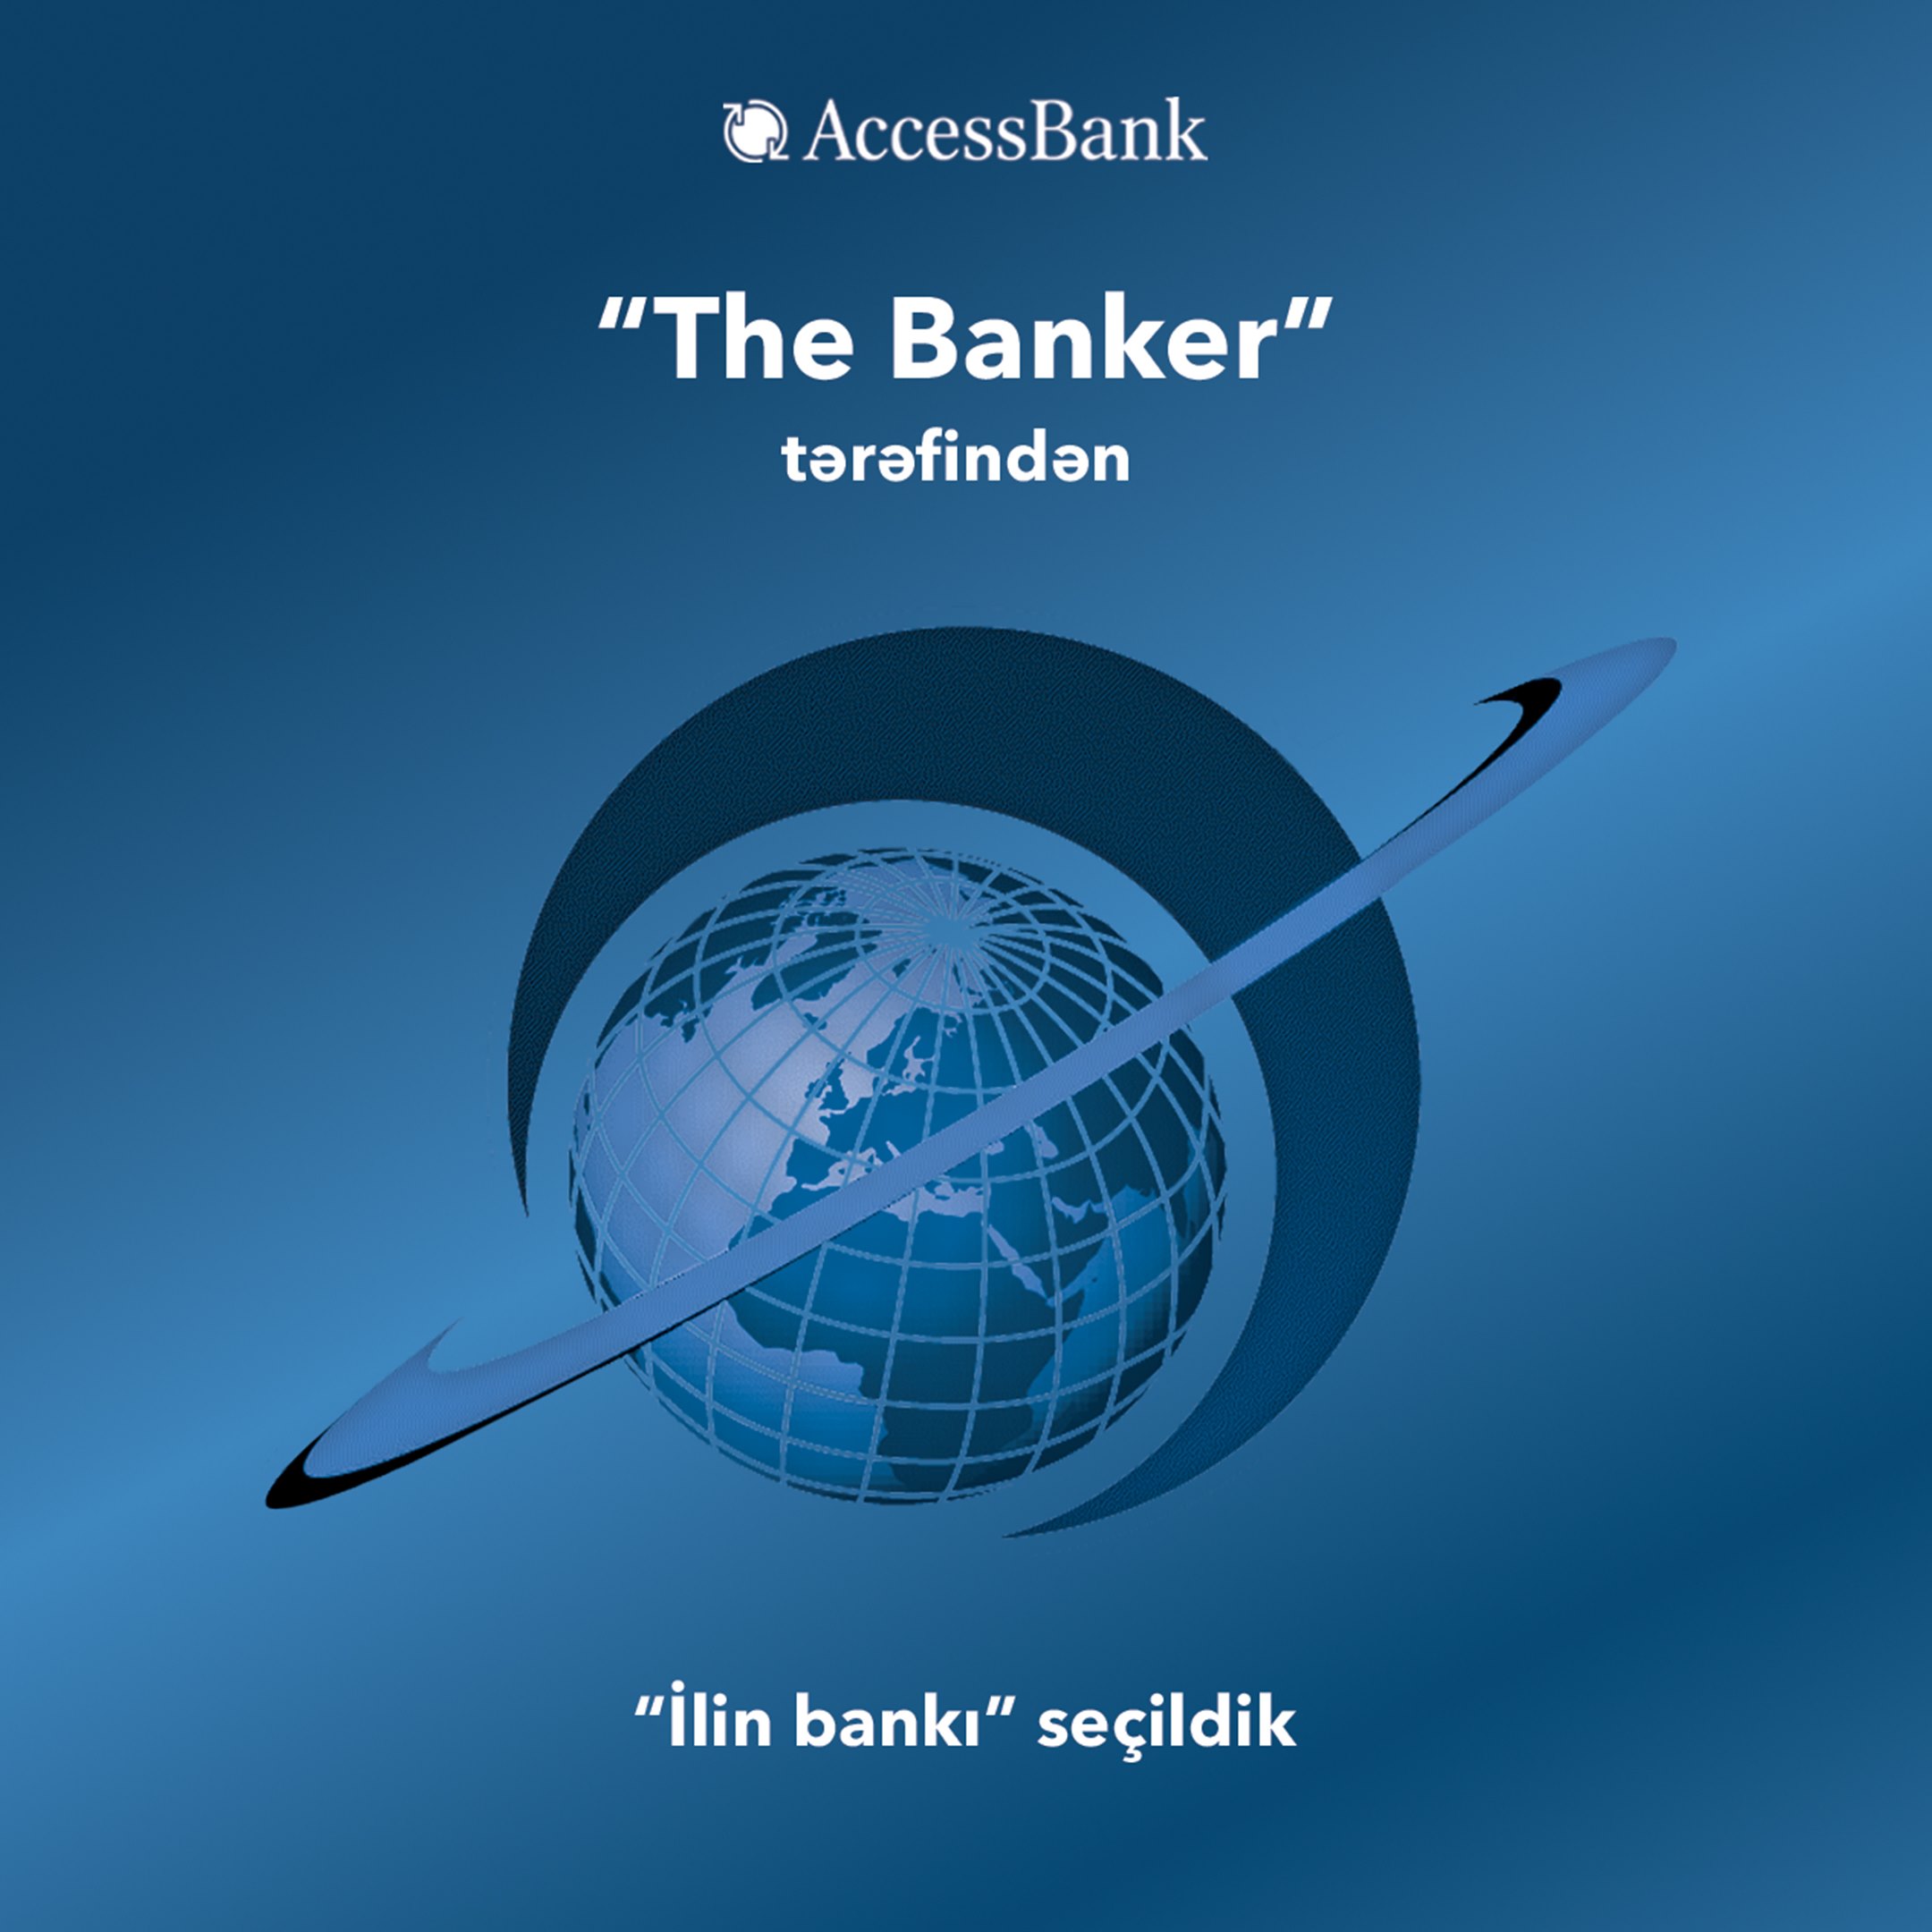 AccessBank has been named 